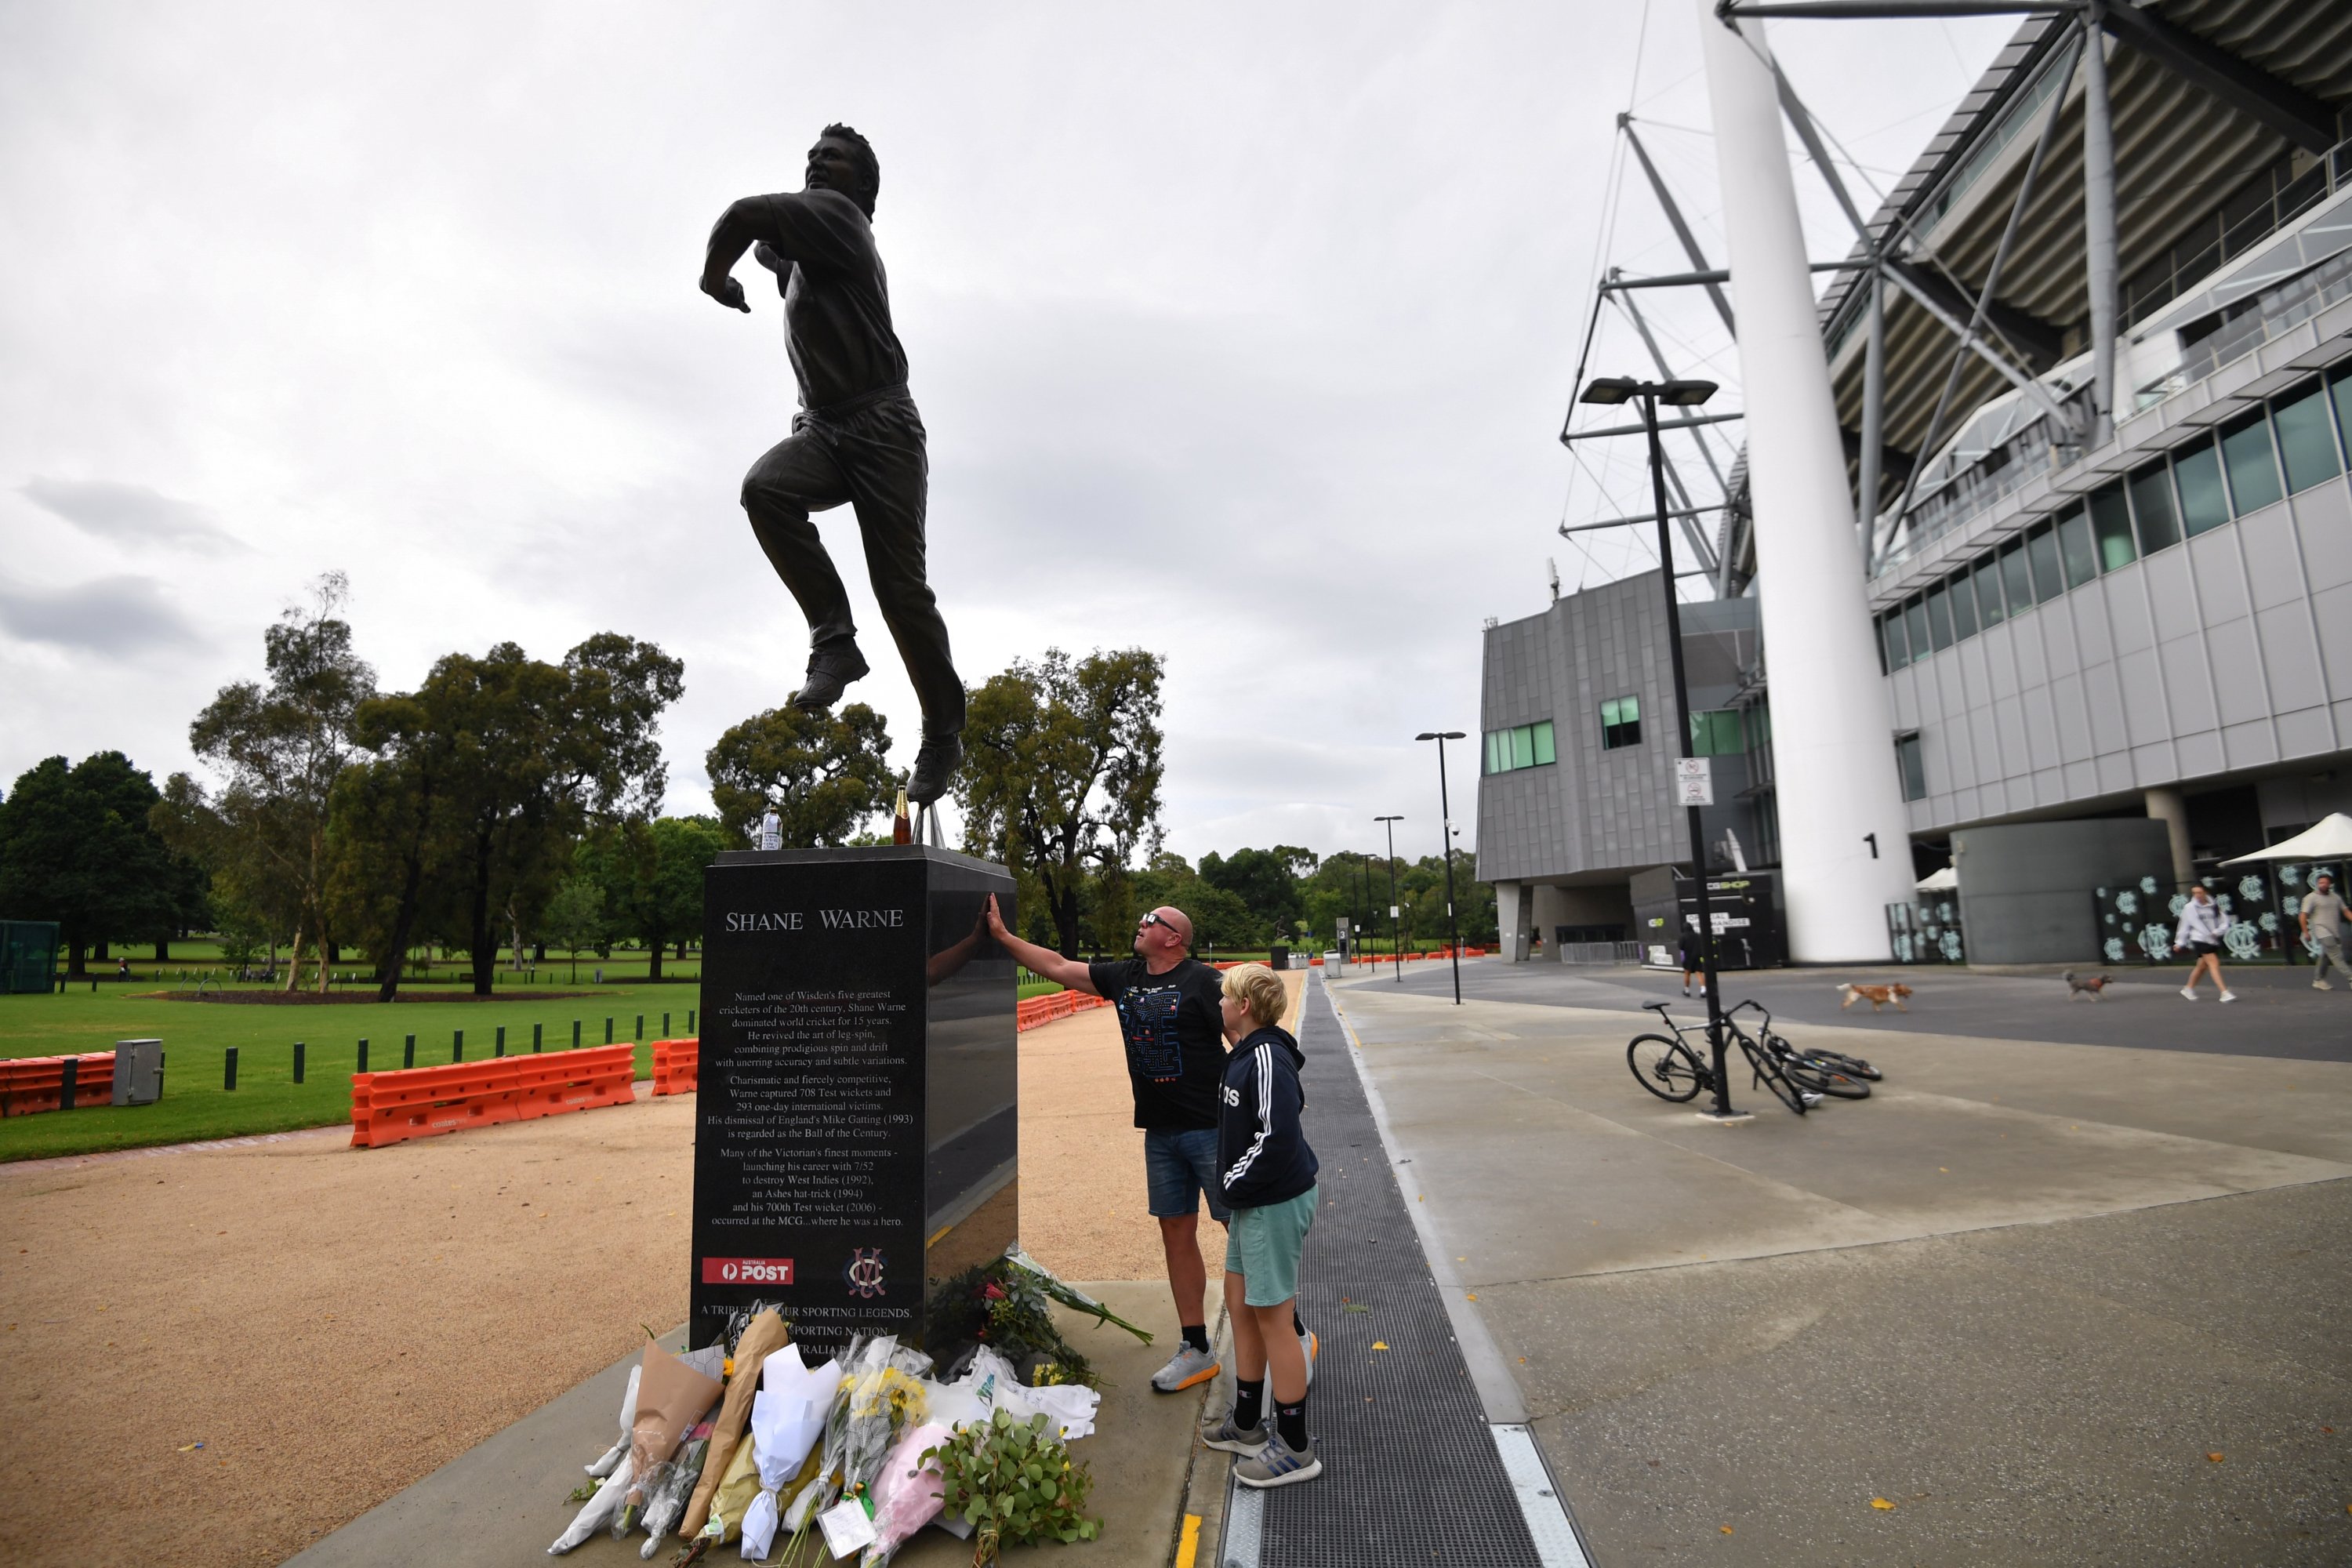 Orang-orang memberikan penghormatan di patung Shane Warne setelah kematiannya, Melbourne, Australia, 5 Maret 2022. (EPA Photo)